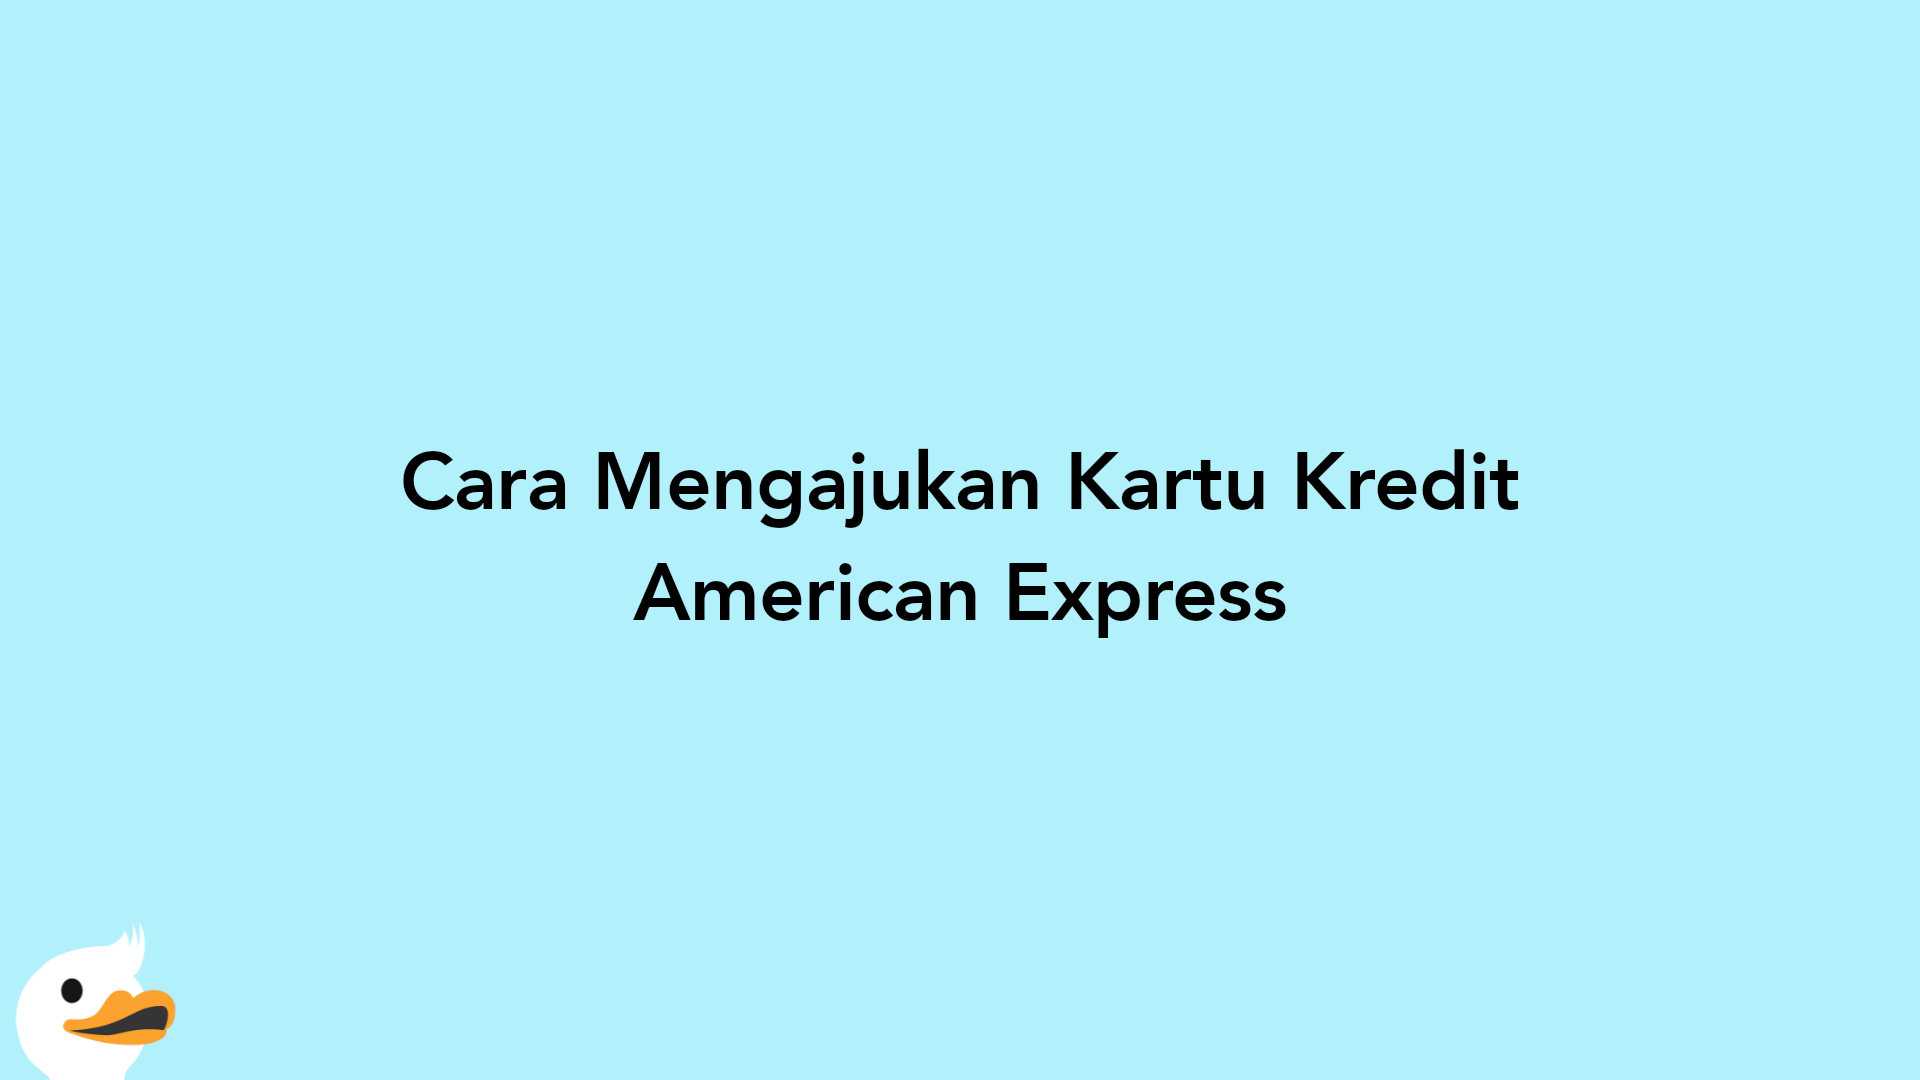 Cara Mengajukan Kartu Kredit American Express